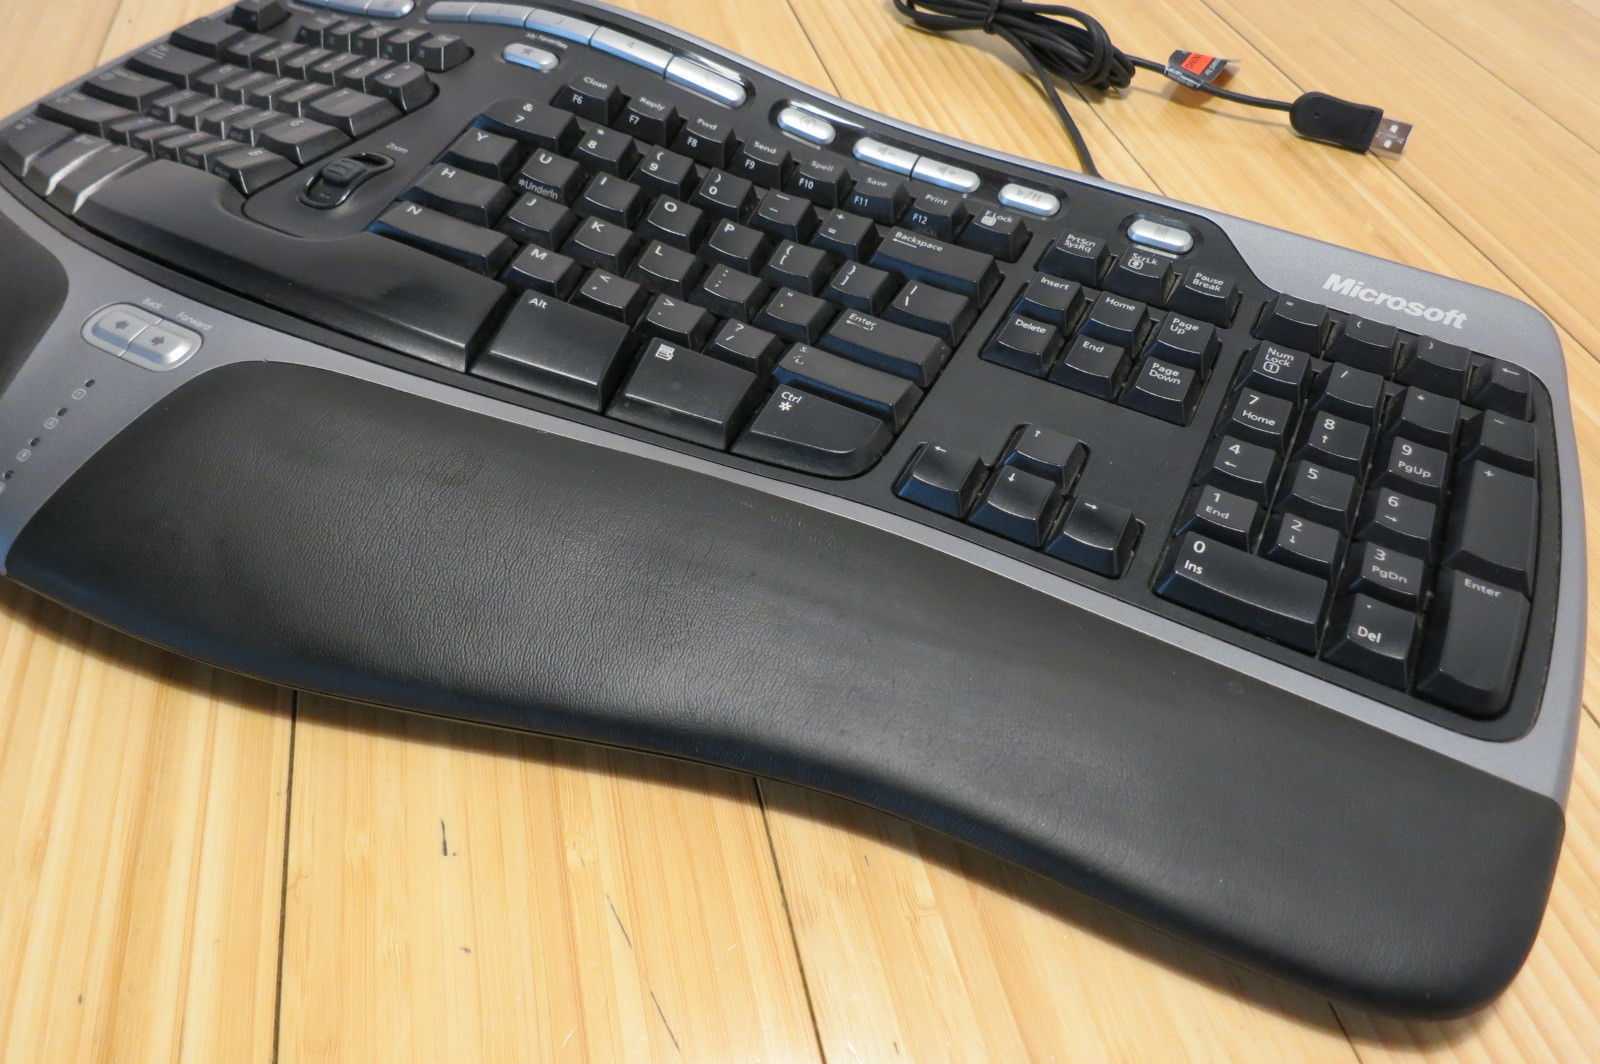 Обзор клавиатуры microsoft natural ergonomic keyboard 4000: особенности, характеристики и отзывы